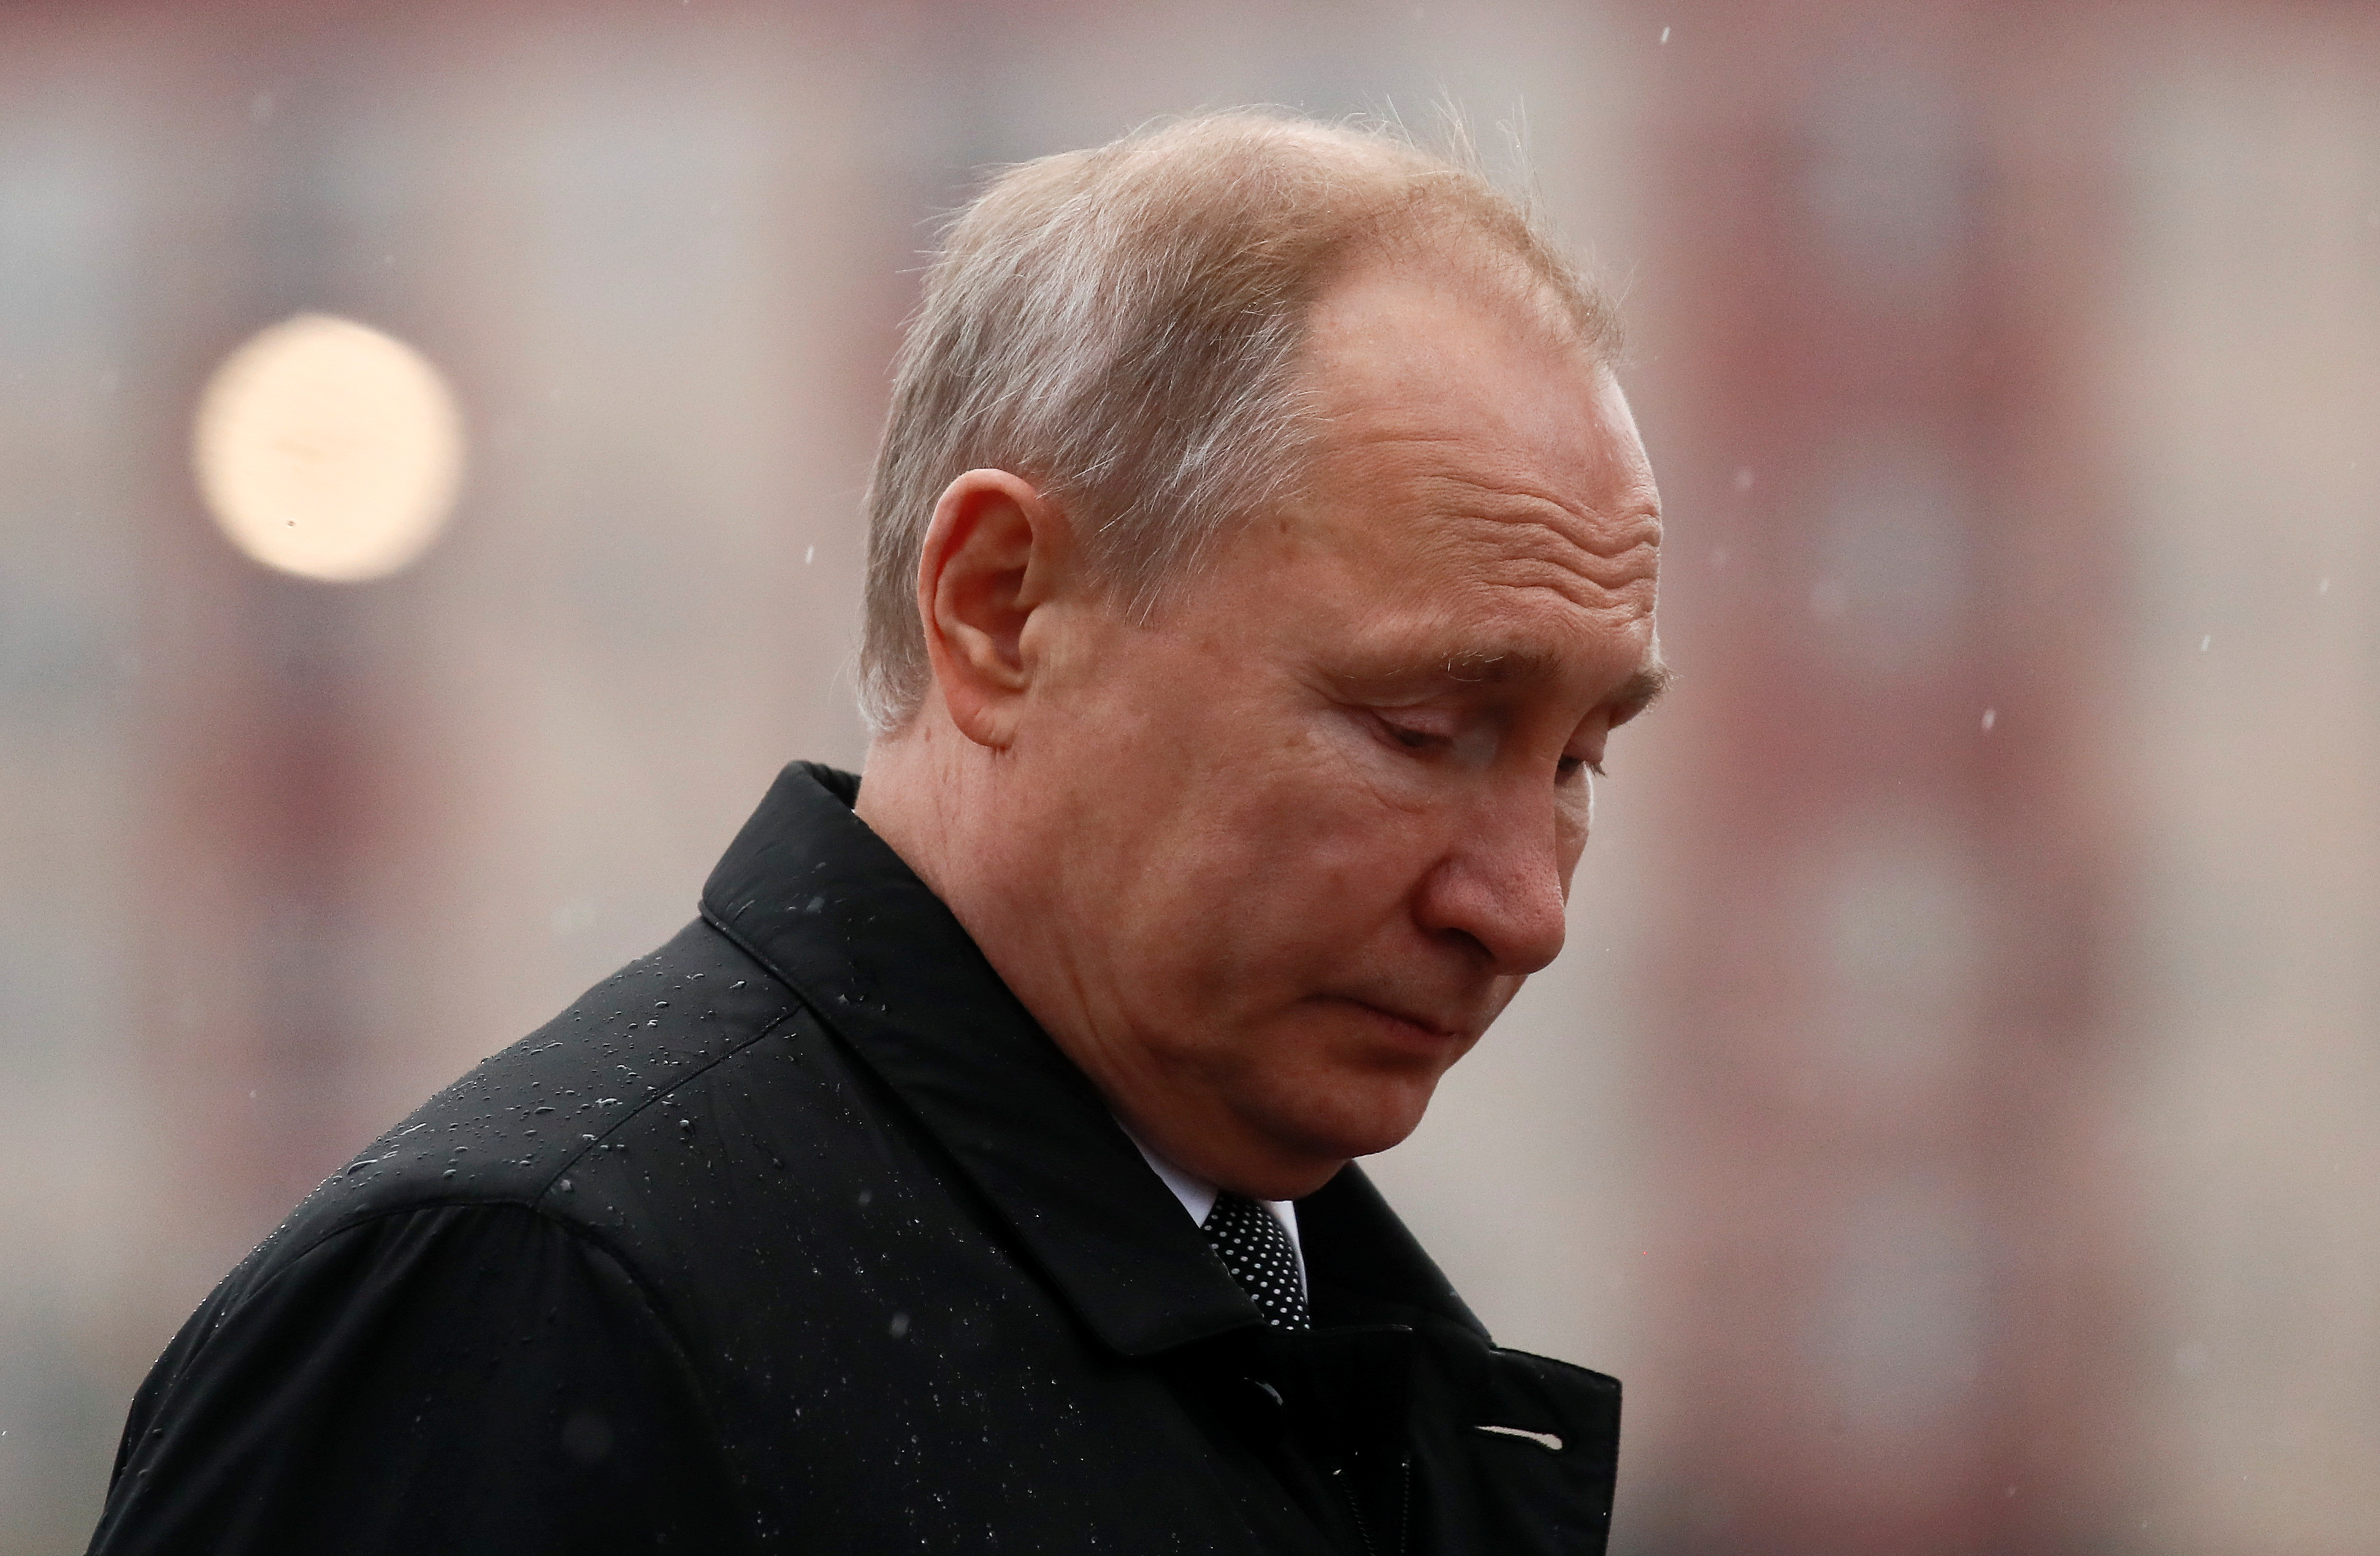 El índice de confianza en Putin llega a un bajo histórico según encuesta estatal